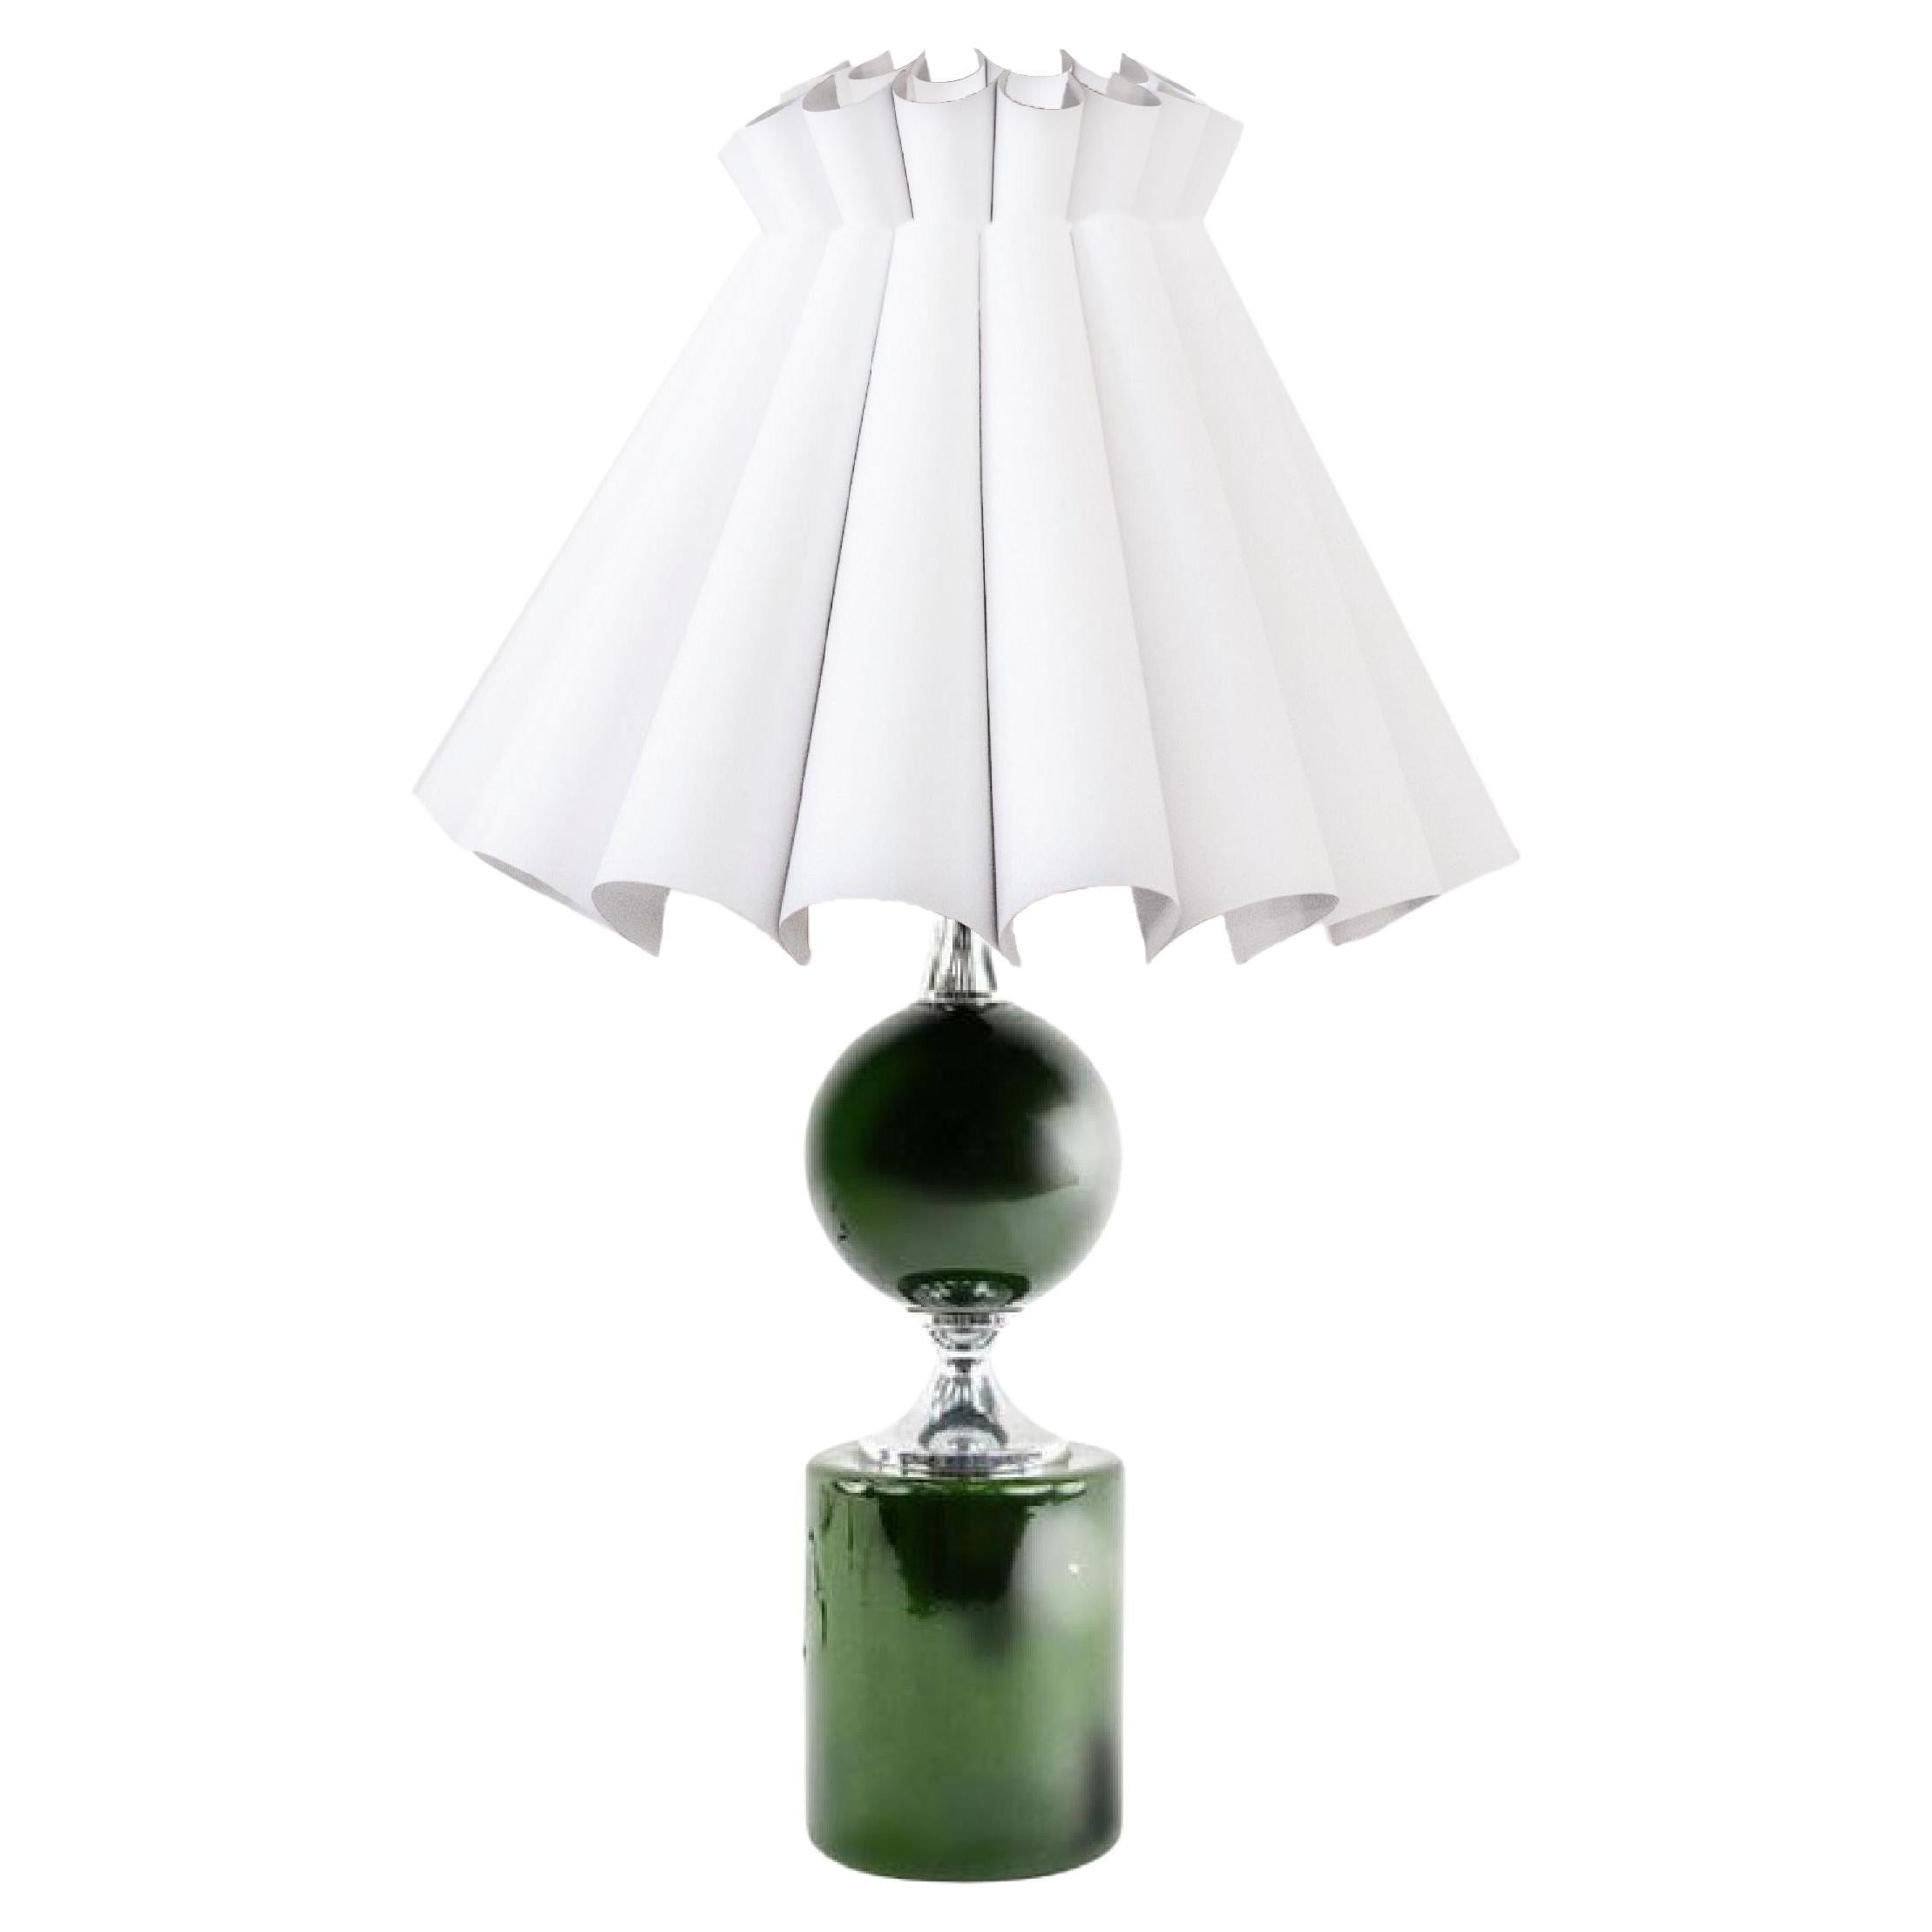 Geometrische Lampe aus emailliertem Messing aus der Mitte des Jahrhunderts, grün, Maison Barbier, 1970er Jahre.
Seltenes skulpturales Stück aus dem Mod-Jahrhundert. Der Lampenkörper besteht aus zwei Hauptteilen, einem elliptischen und einem